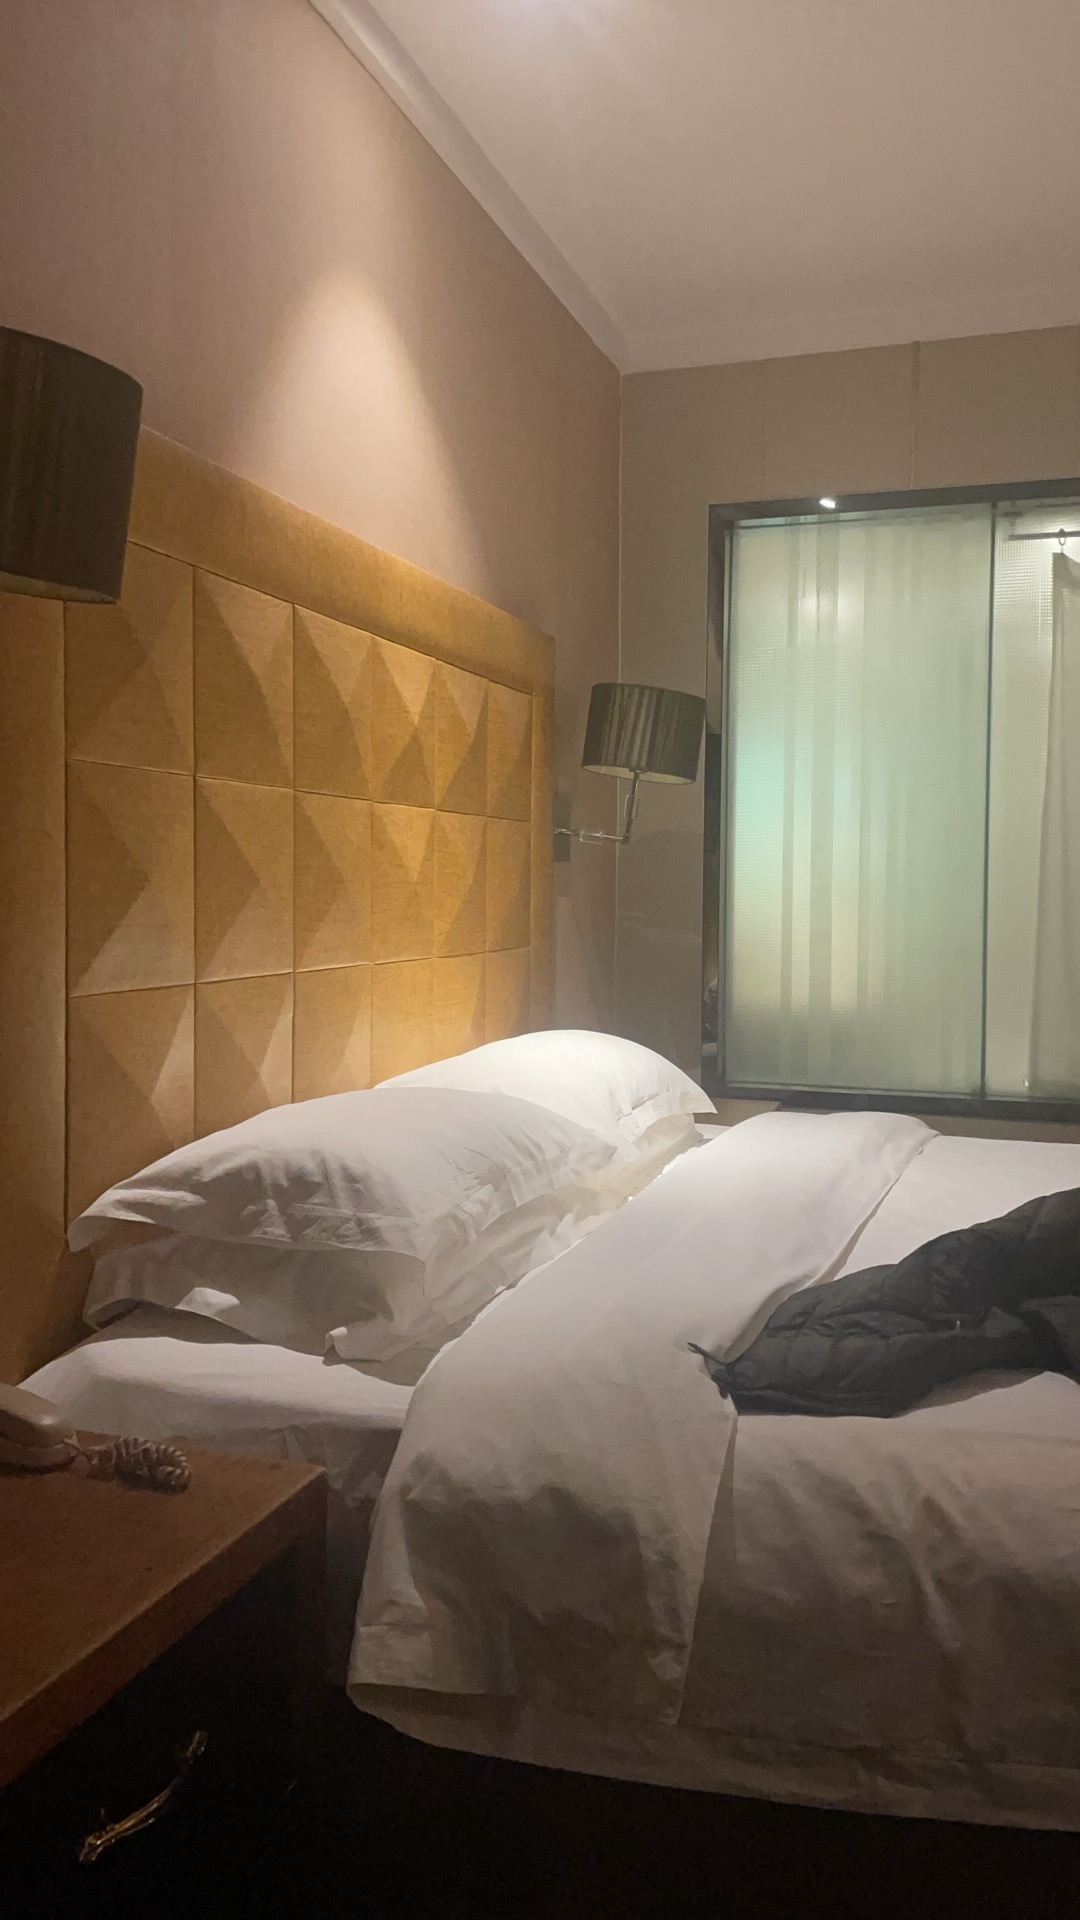 第一次来入住京山玉丰国际大酒店入住，非常好，房间里设施齐全，干净整洁，入住、退房手续简便，服务周到